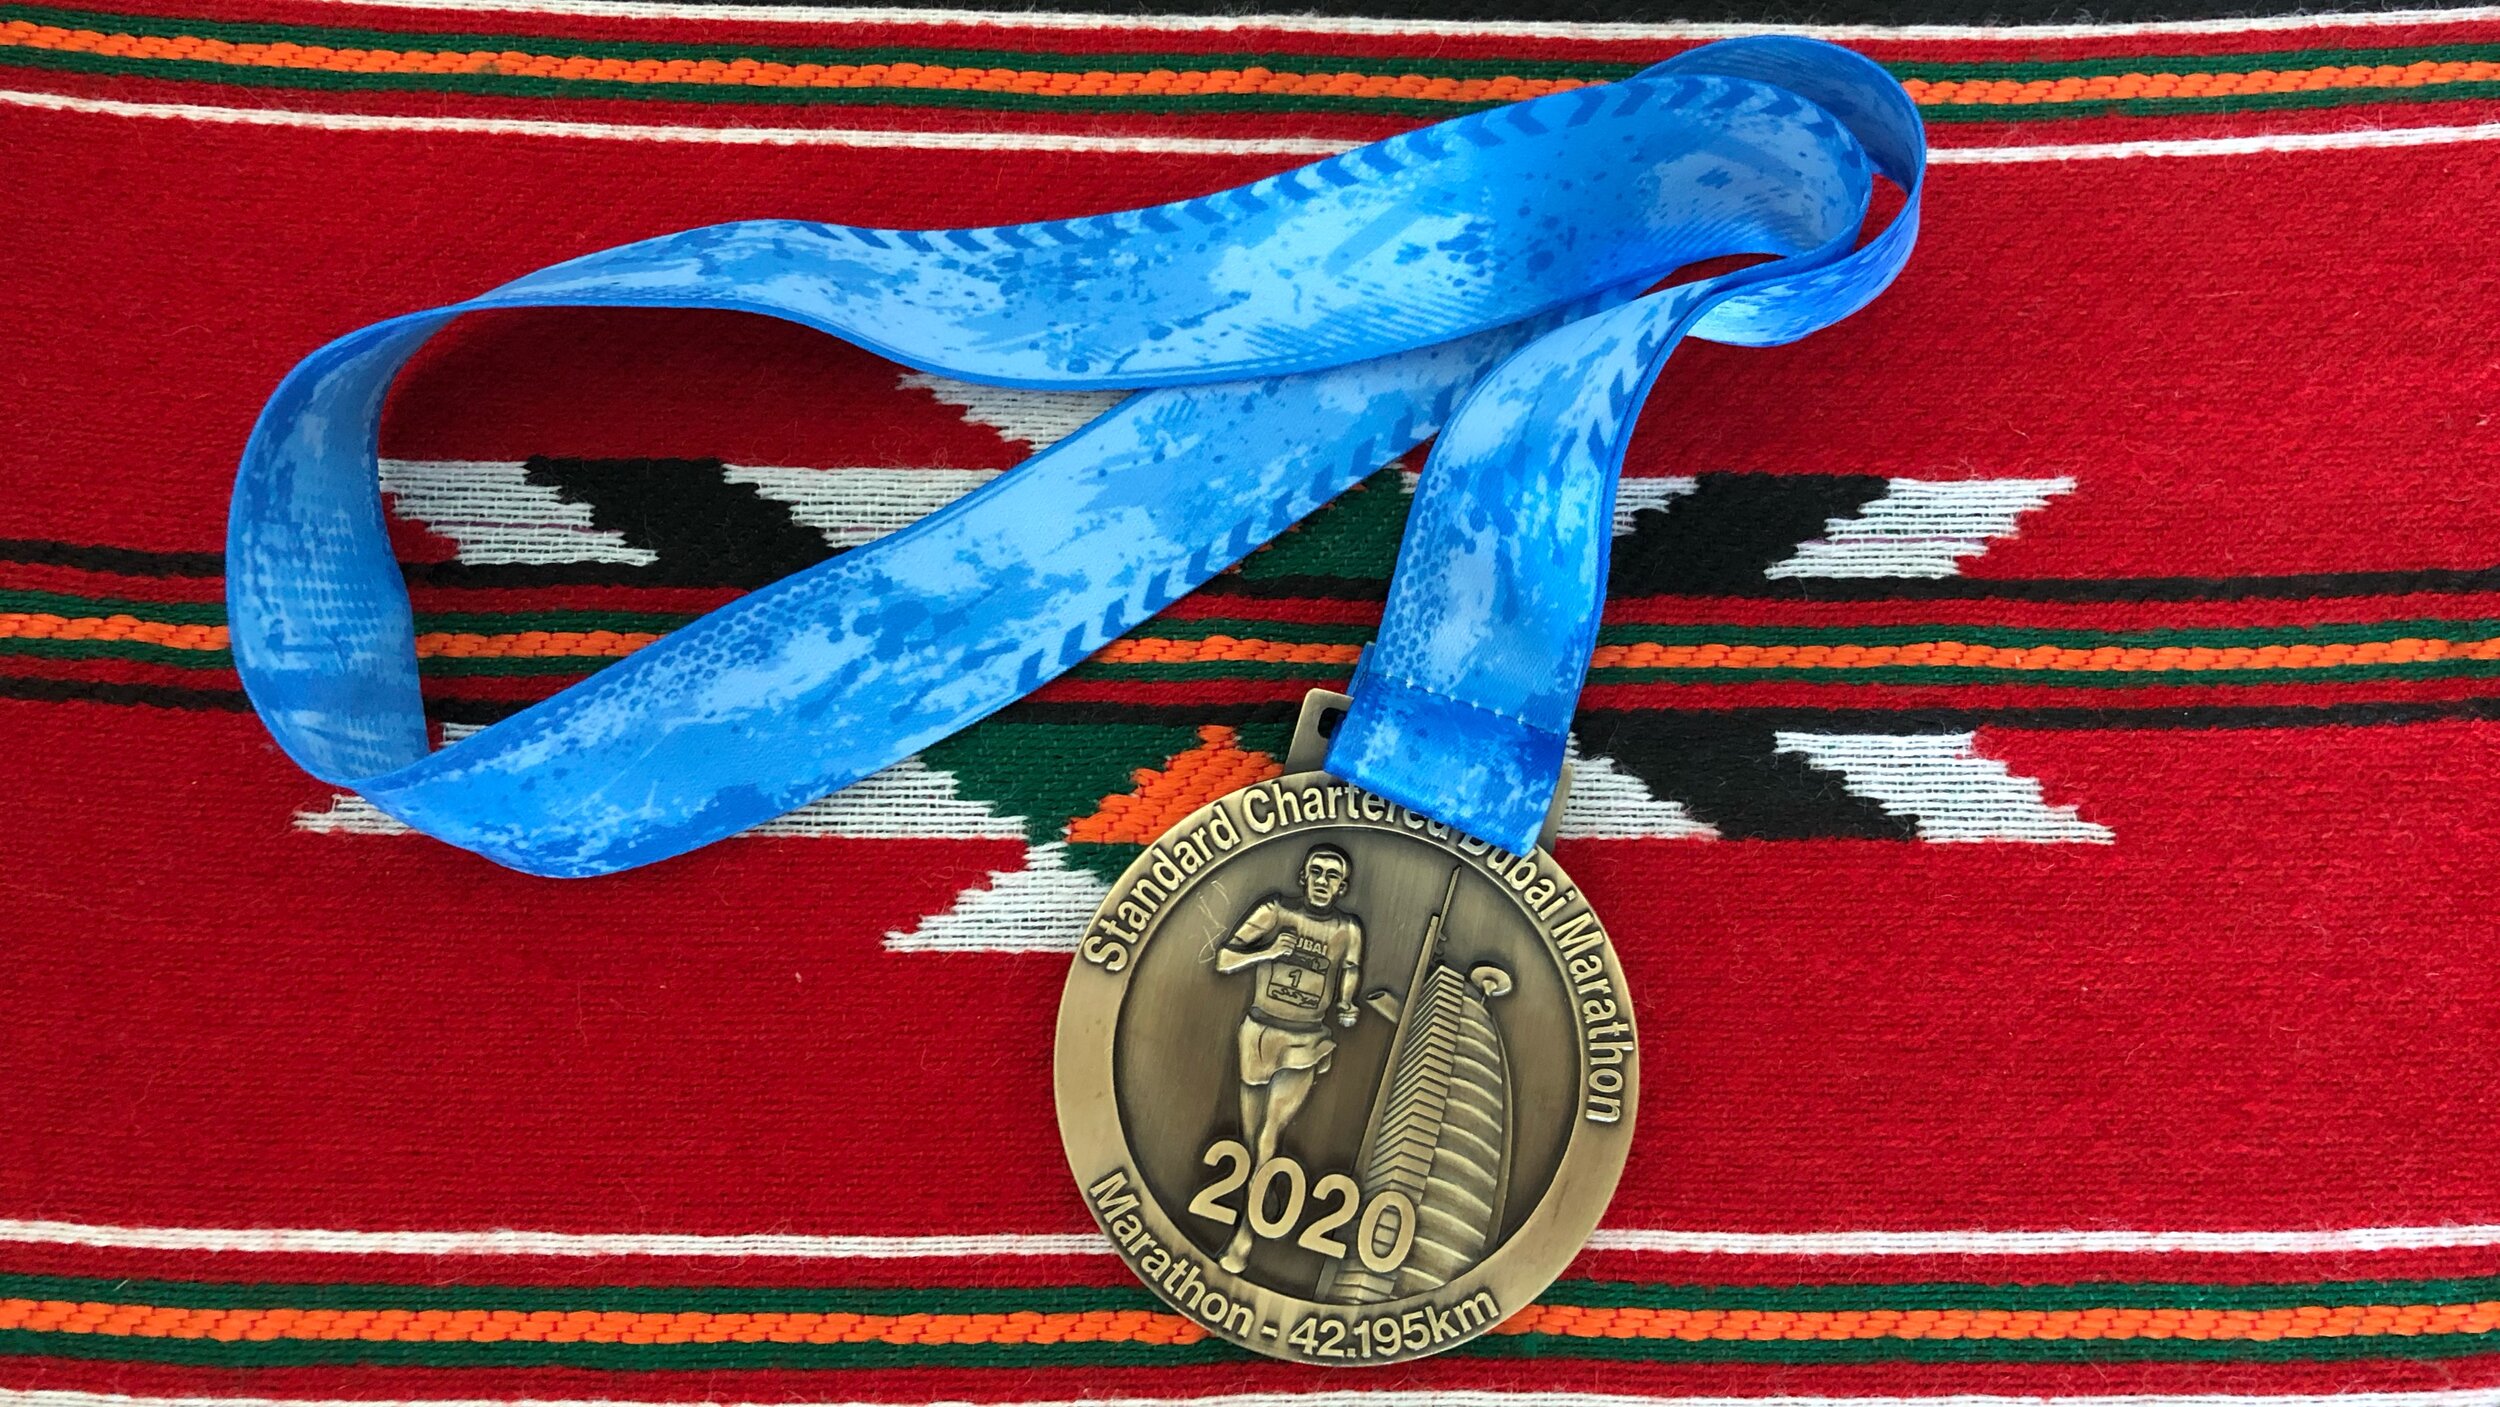 Dubai Marathon medal.JPG